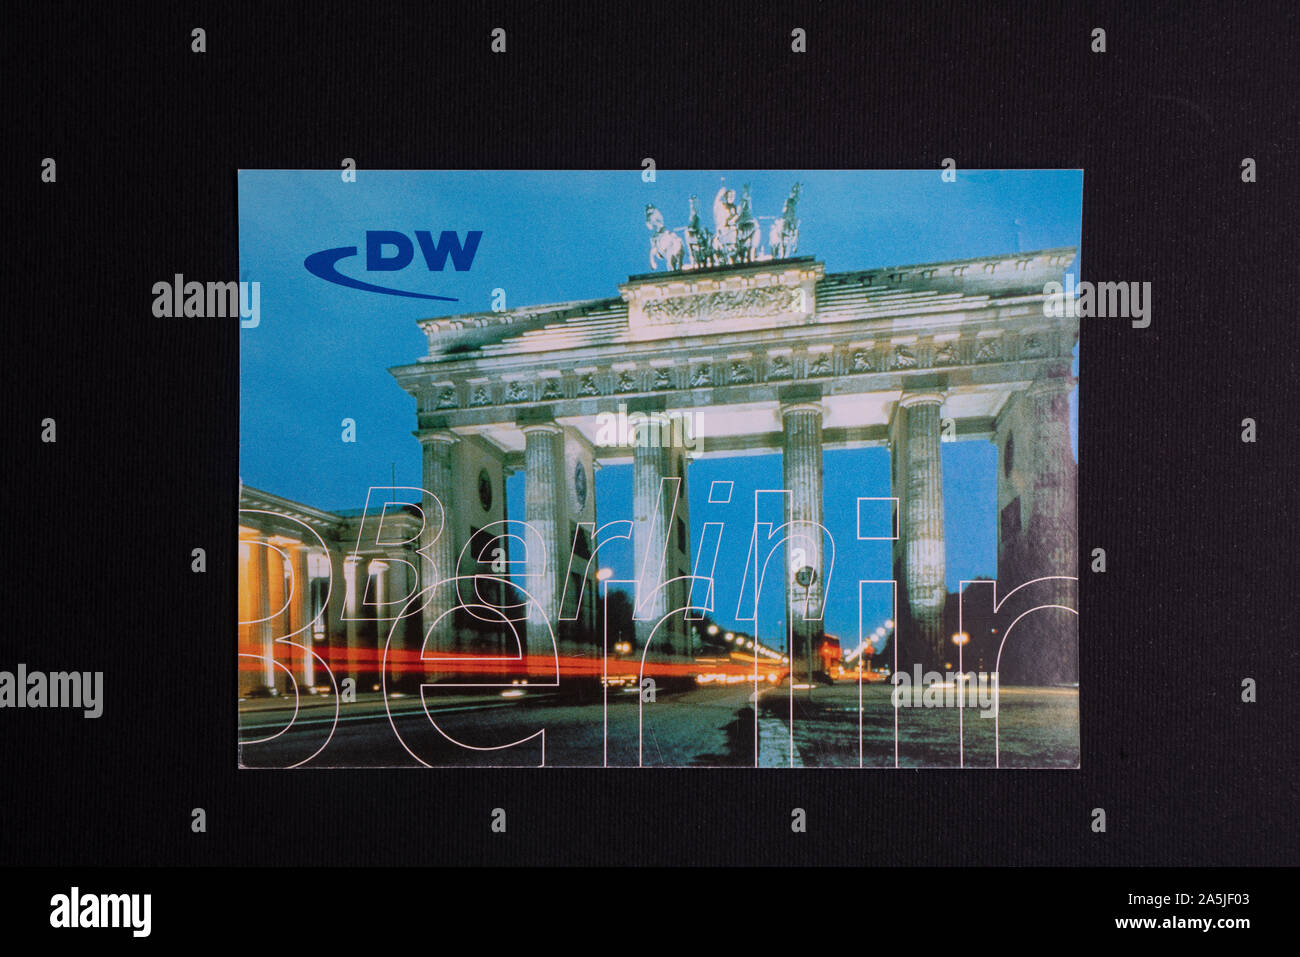 a QSL card of Deutsche Welle Radio station Stock Photo